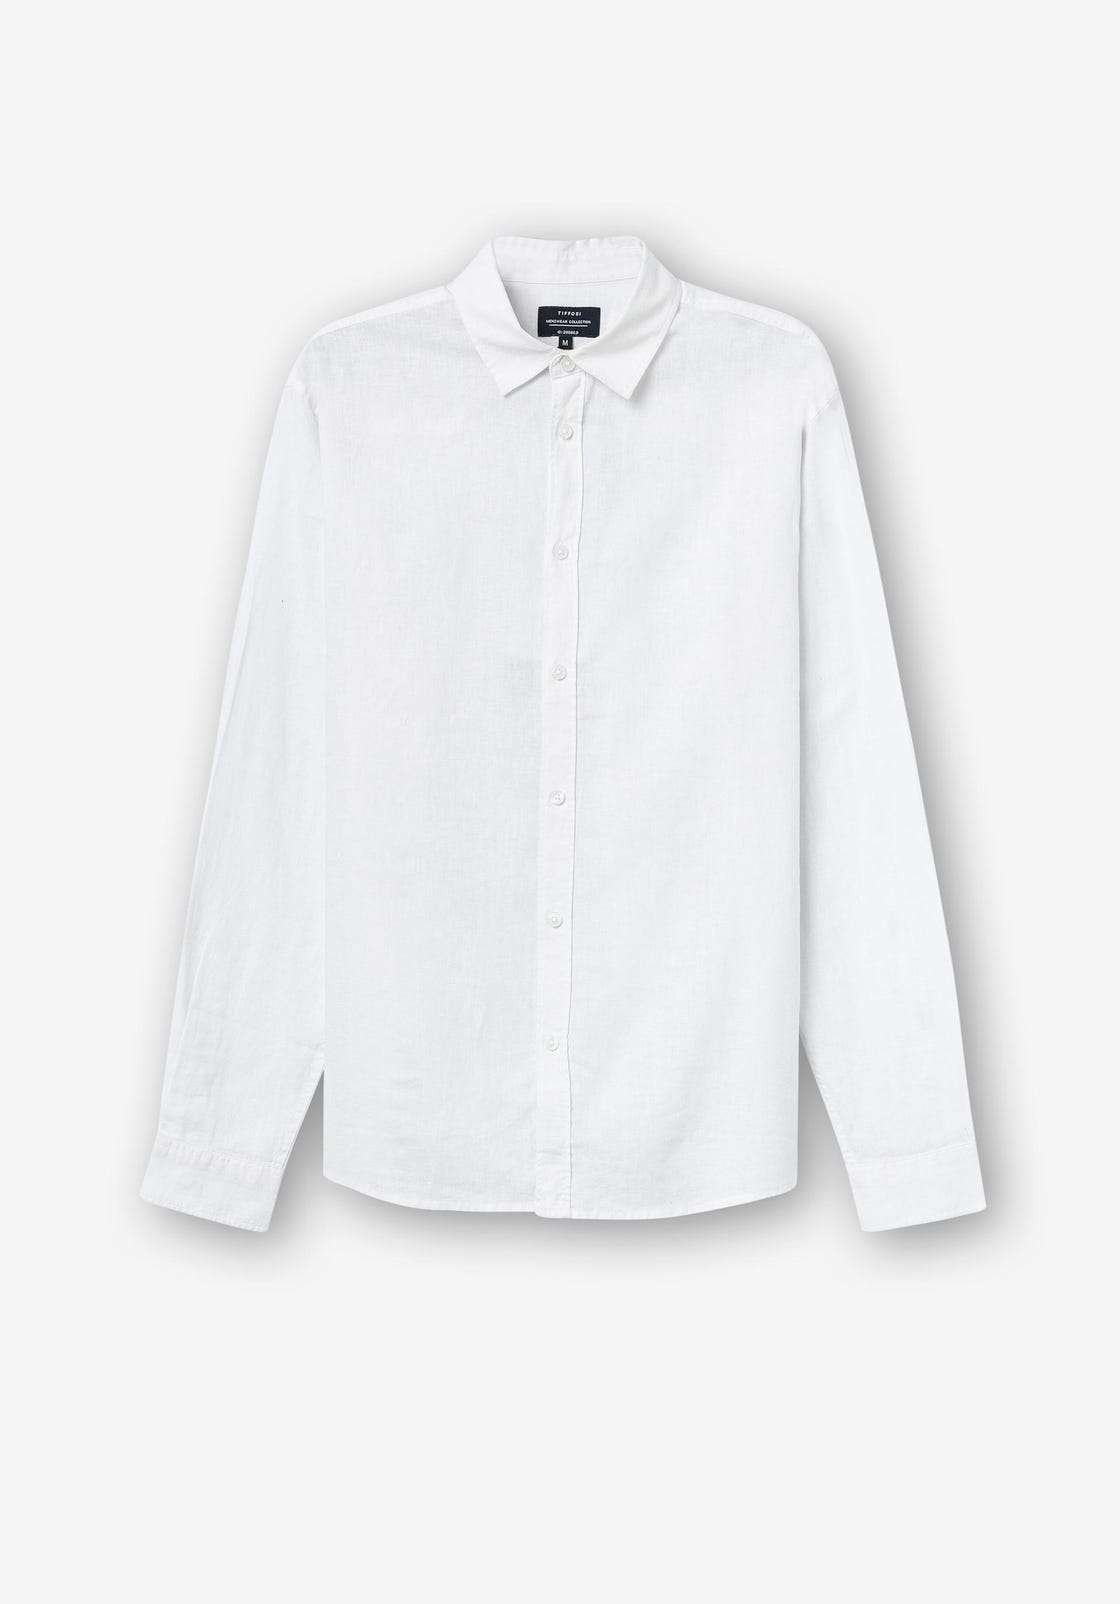 Camisa de Linho - Branco